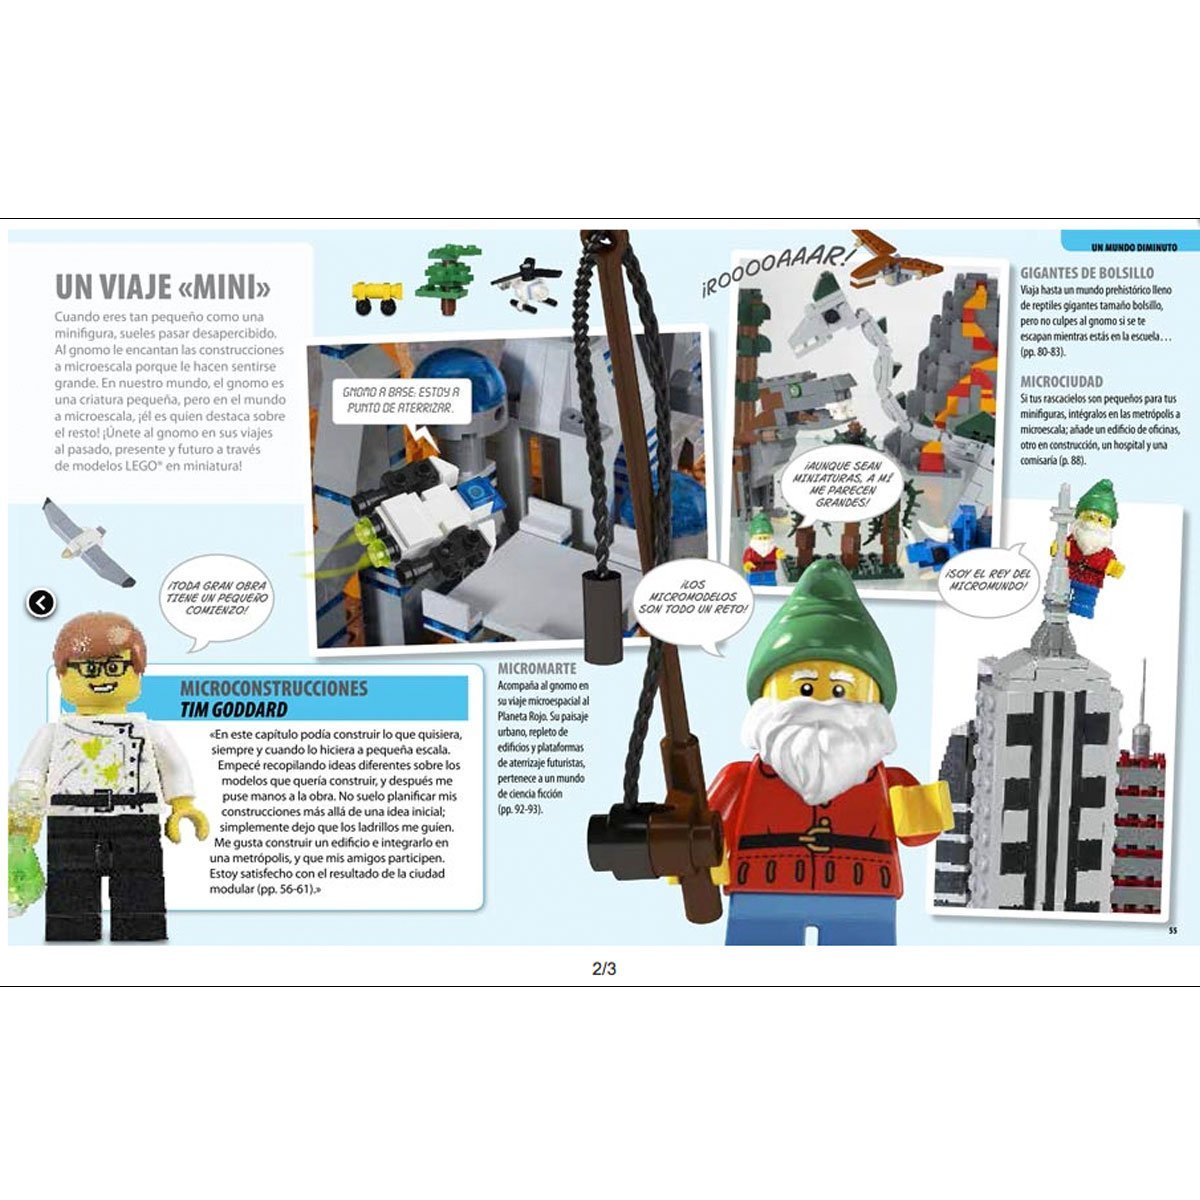 Lego - M&aacute;s Ideas para Jugar Dk